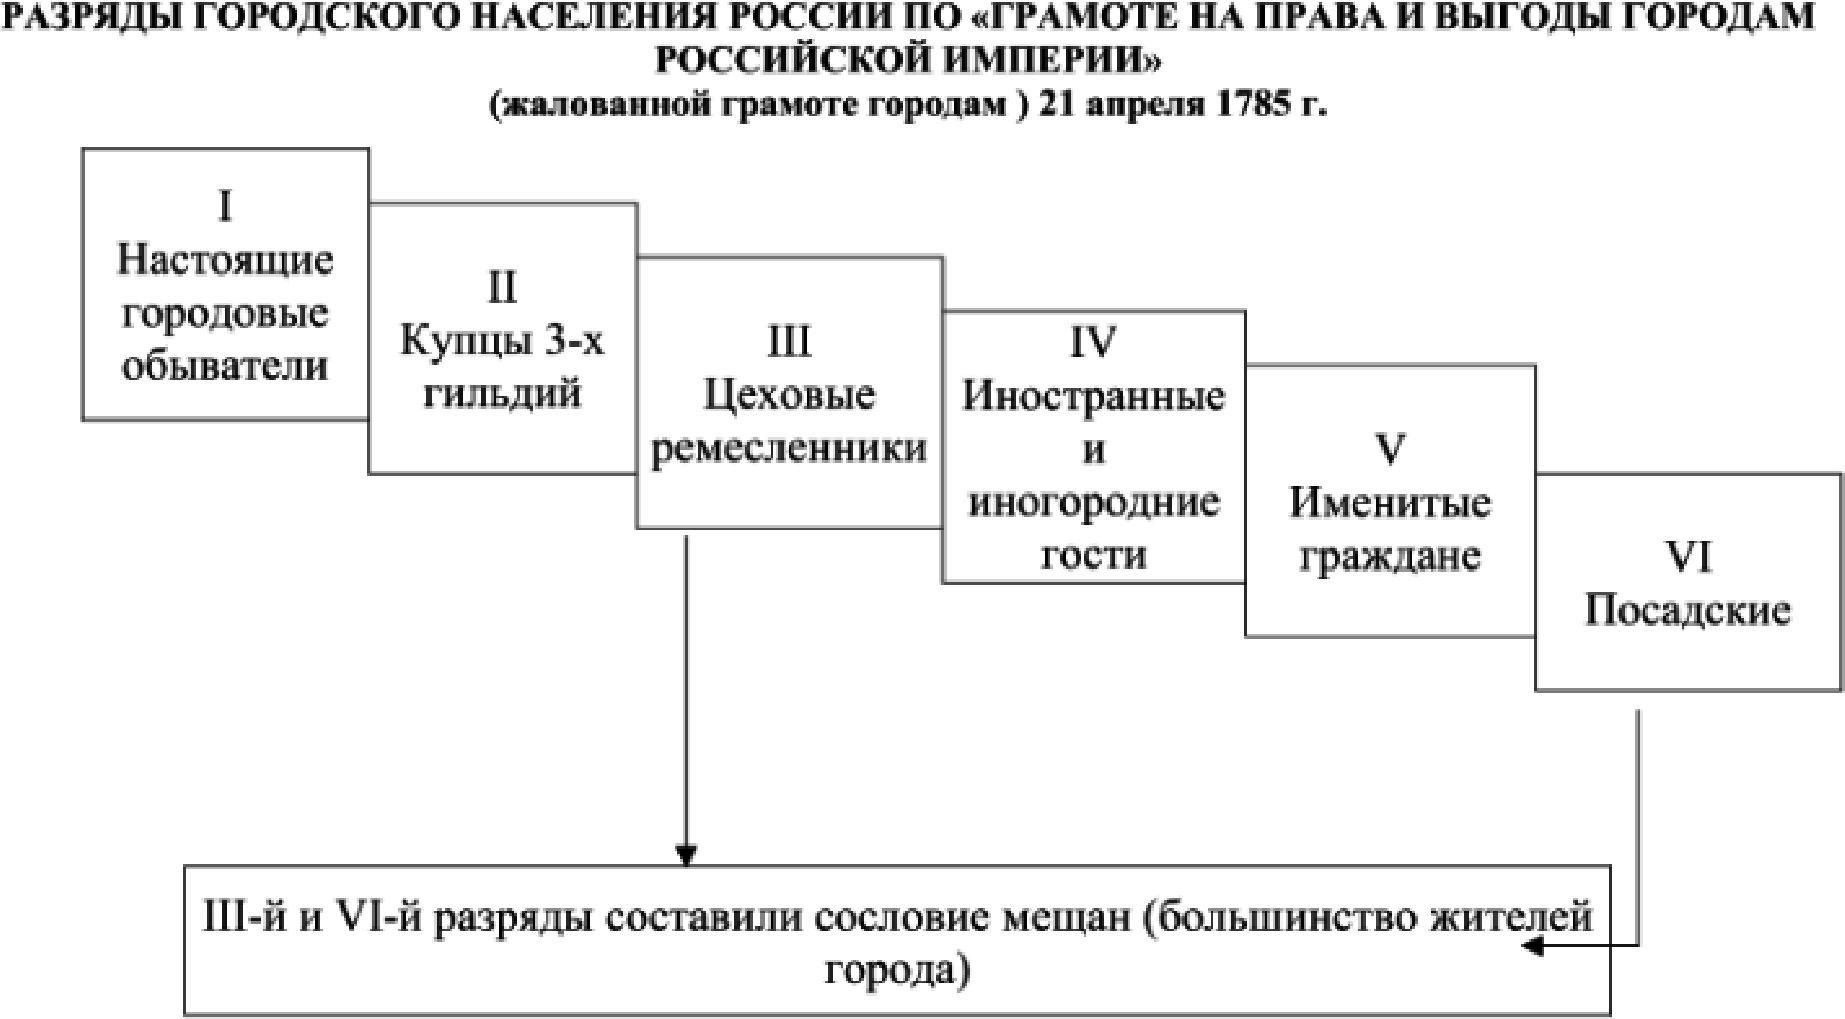 Разряды городского населения в России по Грамоте на права и выгоды городам Российской империи